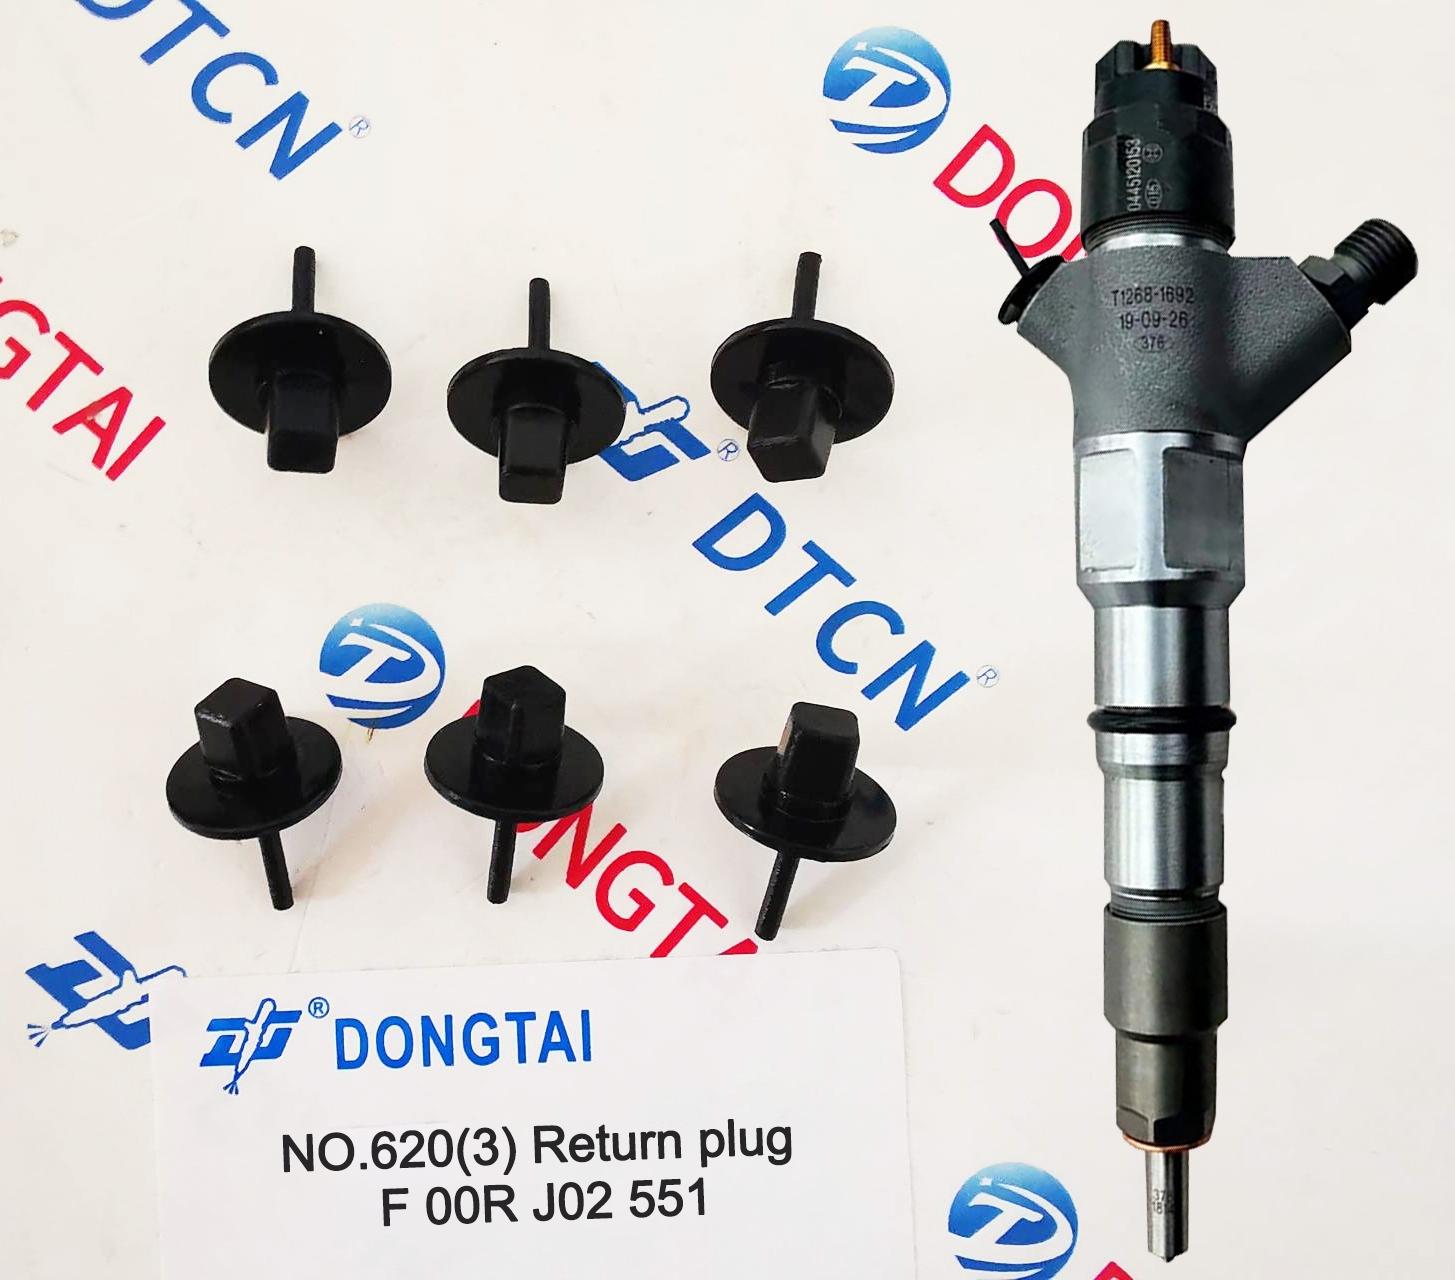 NO.620(3) Return plug F 00R J02 551